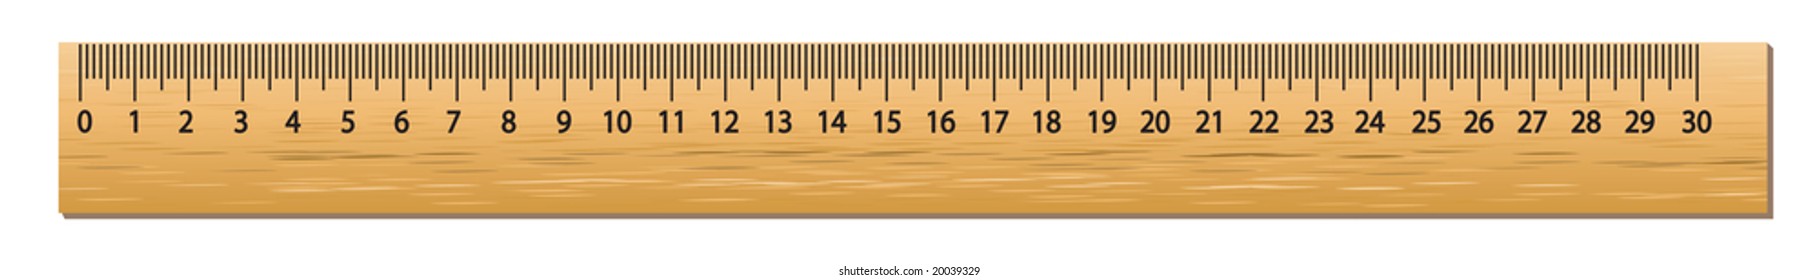 10 foot ruler